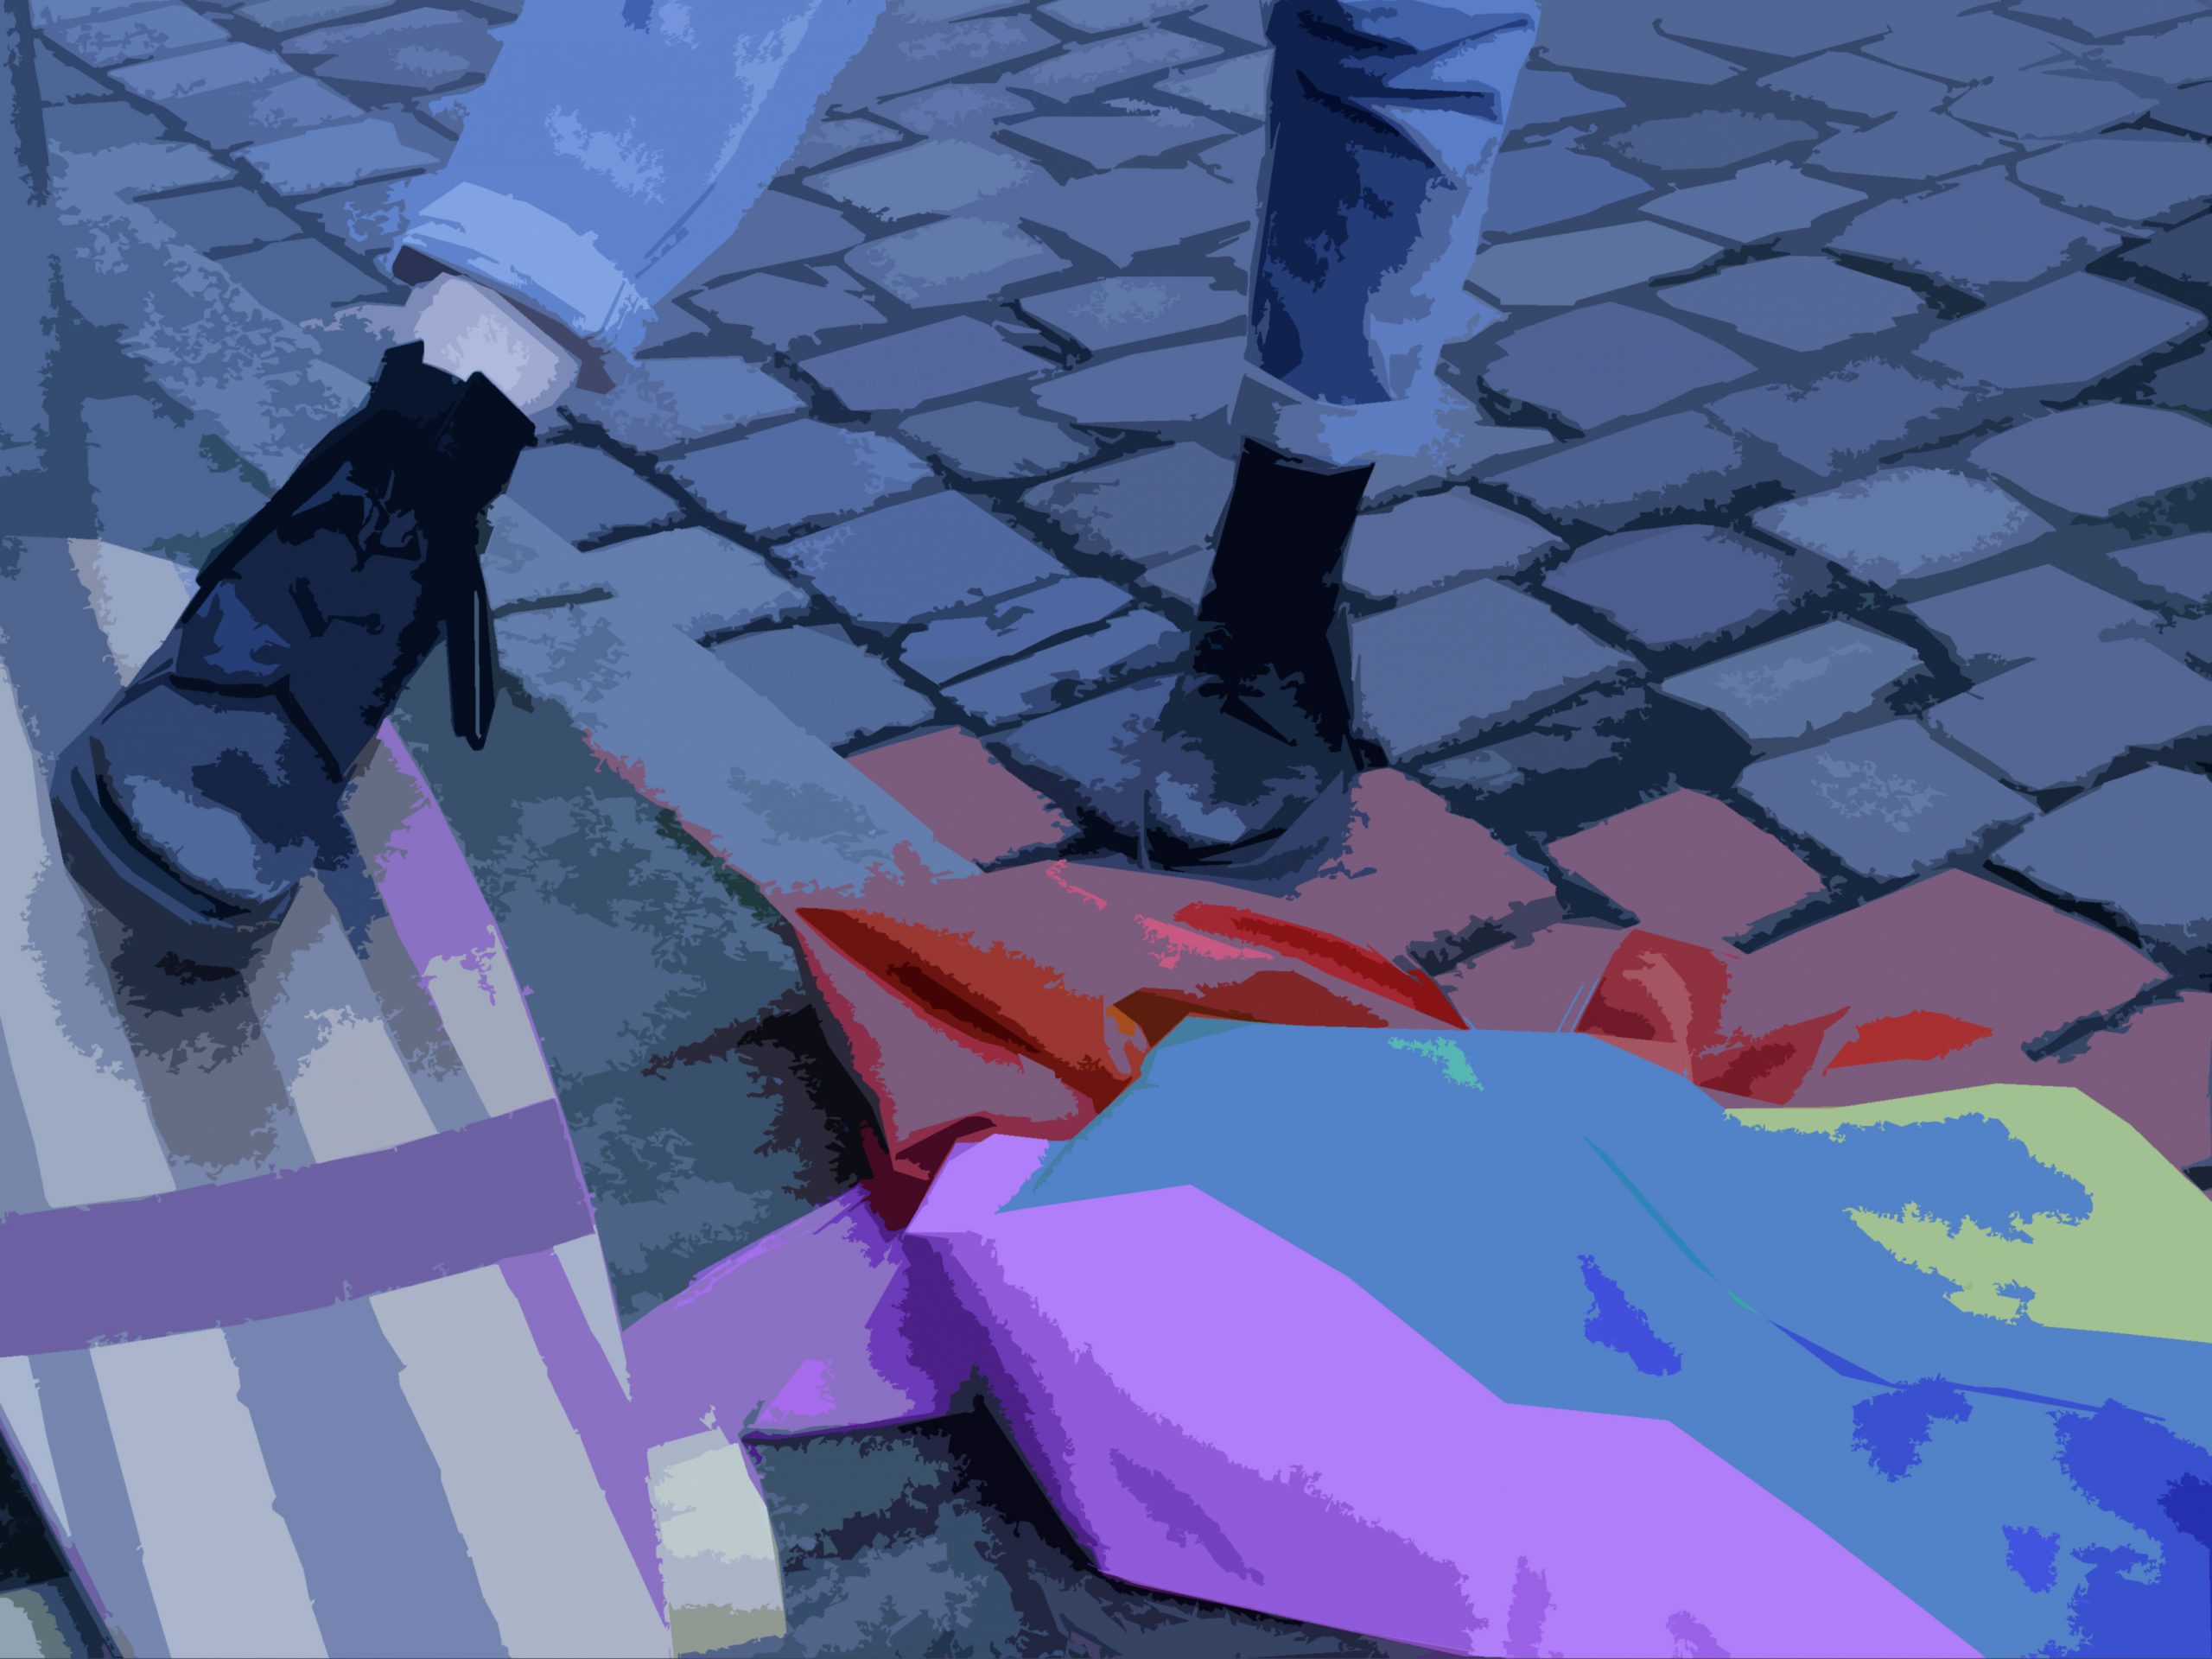 Auf der Straße. Ein Longboard liegt neben einer Gay Pride Flagge auf dem Bordstein. Eine Person (zu sehen sind nur die Beine von den Knien abwärts) steht mit einem Fuß lässig auf dem Board.